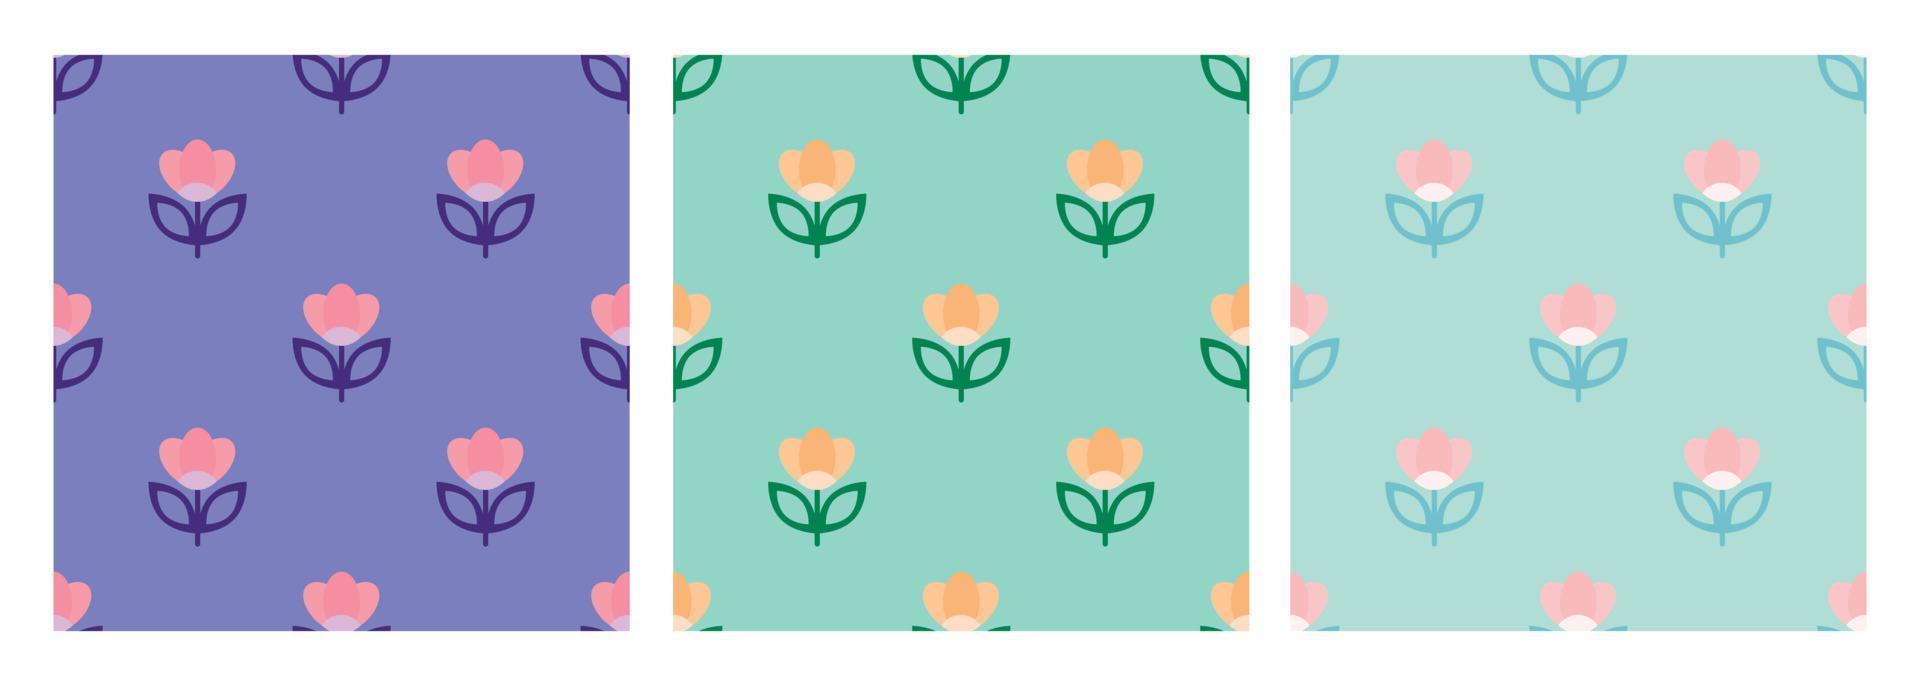 skandinaviska geometriska enkla sömlösa blommönster. folkkonst i nordisk stil. tulpan blommor bakgrund. för print high fashion tyg, textil. sömlös blommönster vektor. vektor